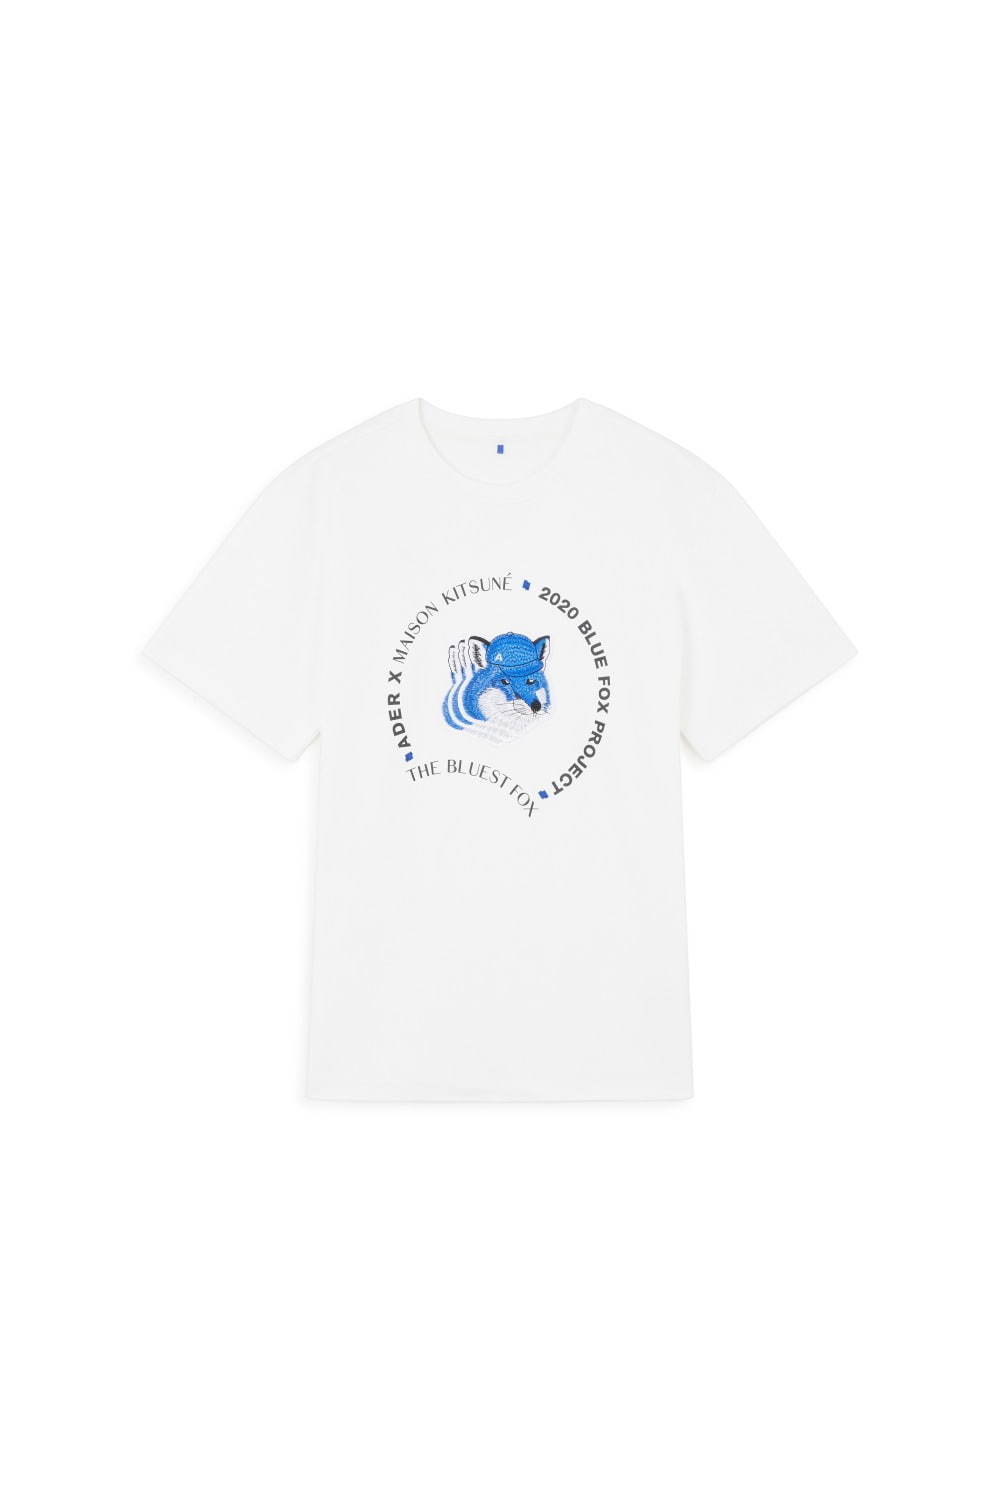 国内新品 メゾンキツネ × アーダーエラー BLUE FOX Tシャツ 2020